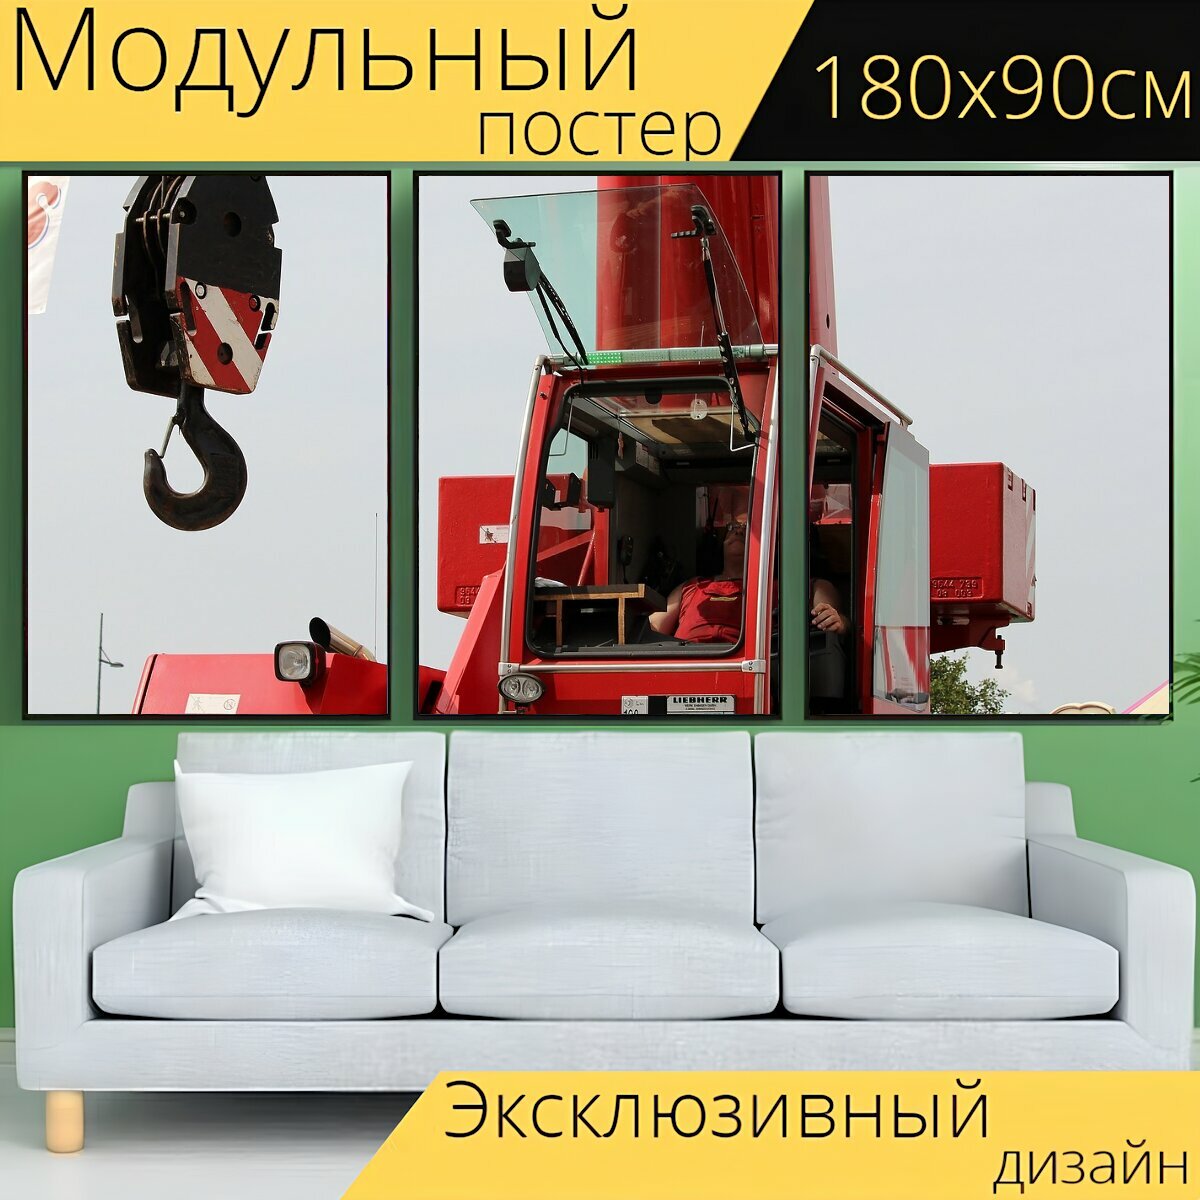 Модульный постер "Кран, крюк, грузовой кран" 180 x 90 см. для интерьера